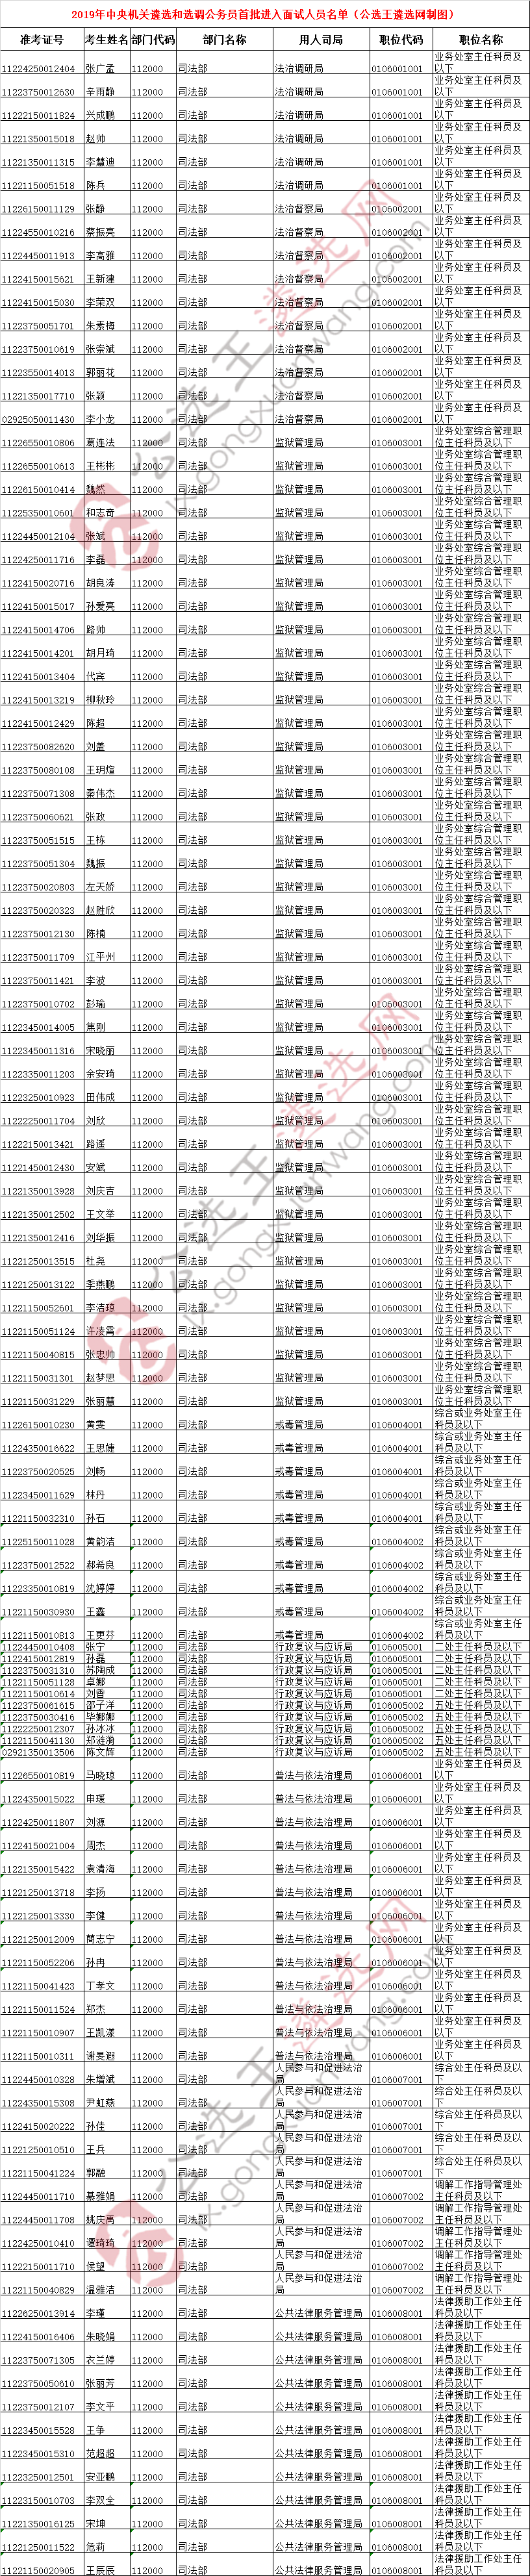 2019年中央机关遴选面试人员名单---司法局.png